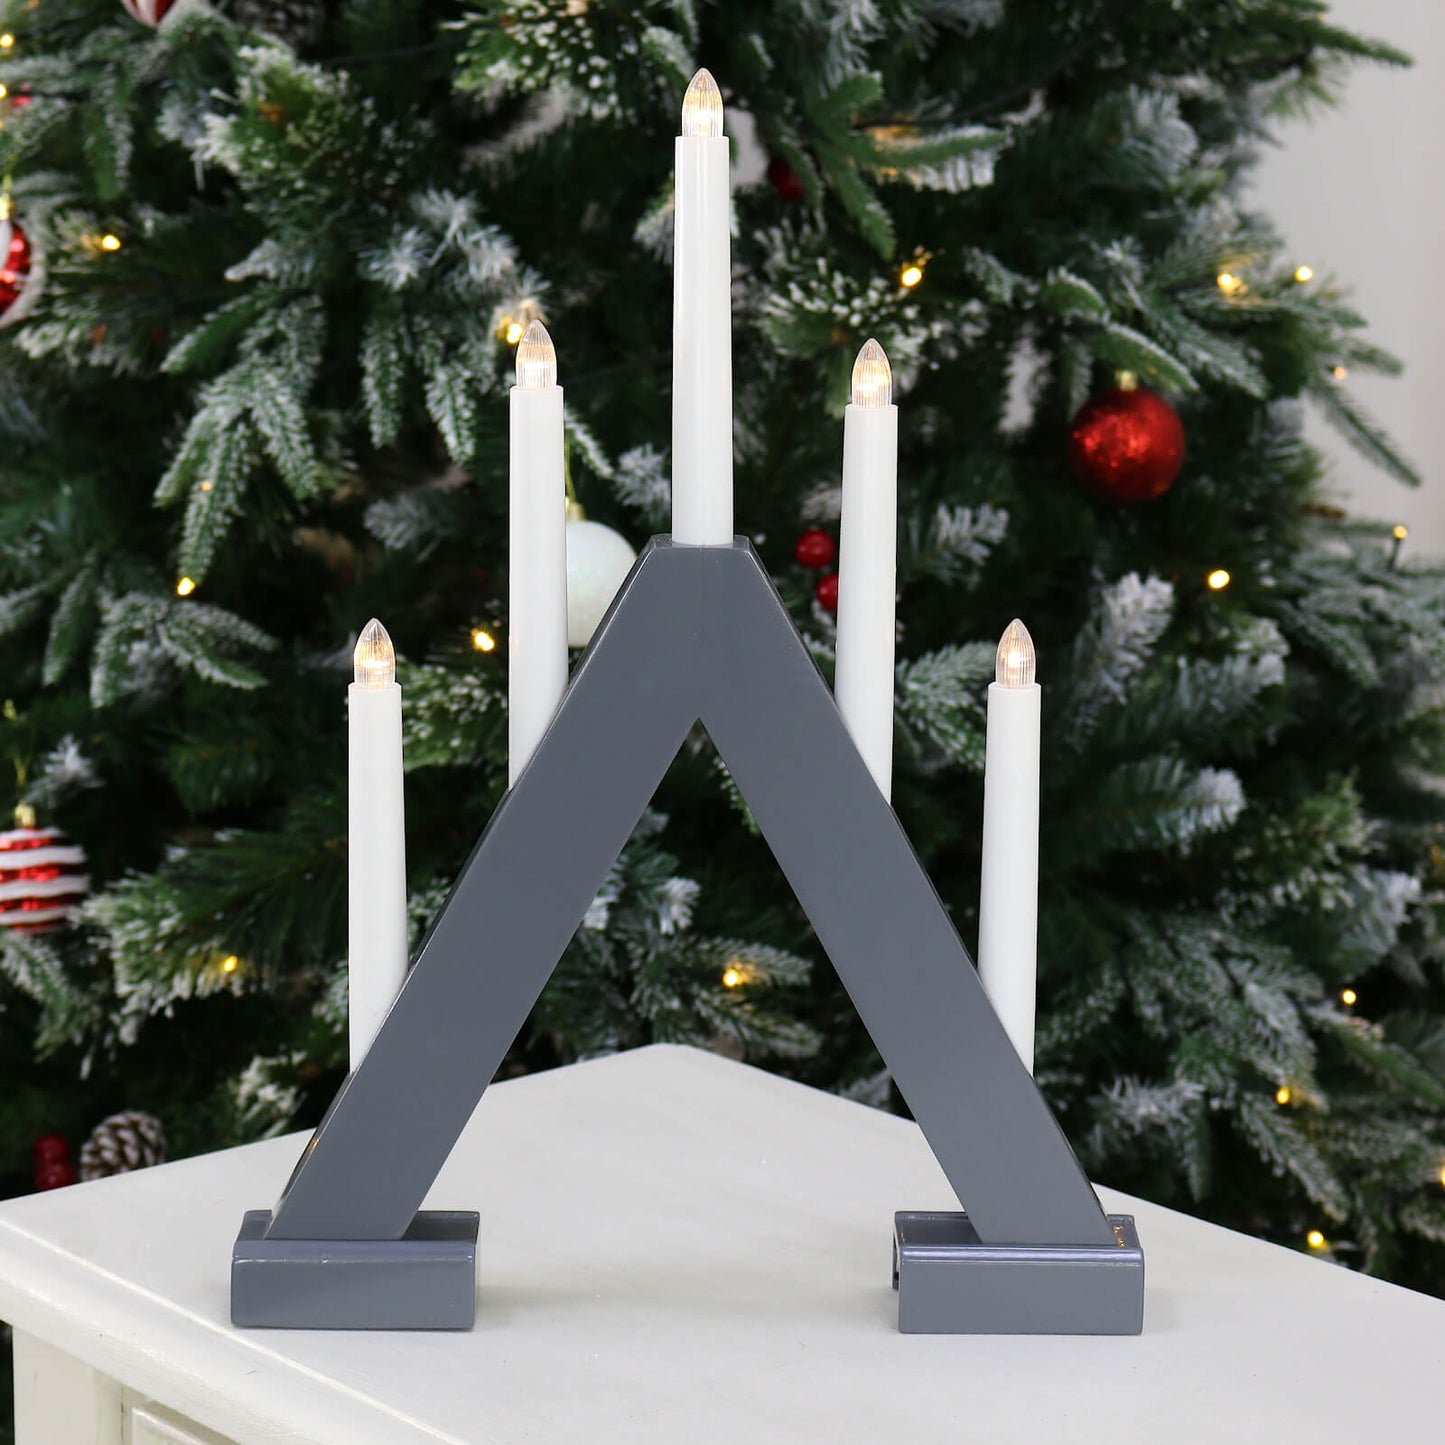 Mr Crimbo 5 Light Christmas Candle Bridge Grey Wood LED 40cm - MrCrimbo.co.uk -XS7160 - -Decorations